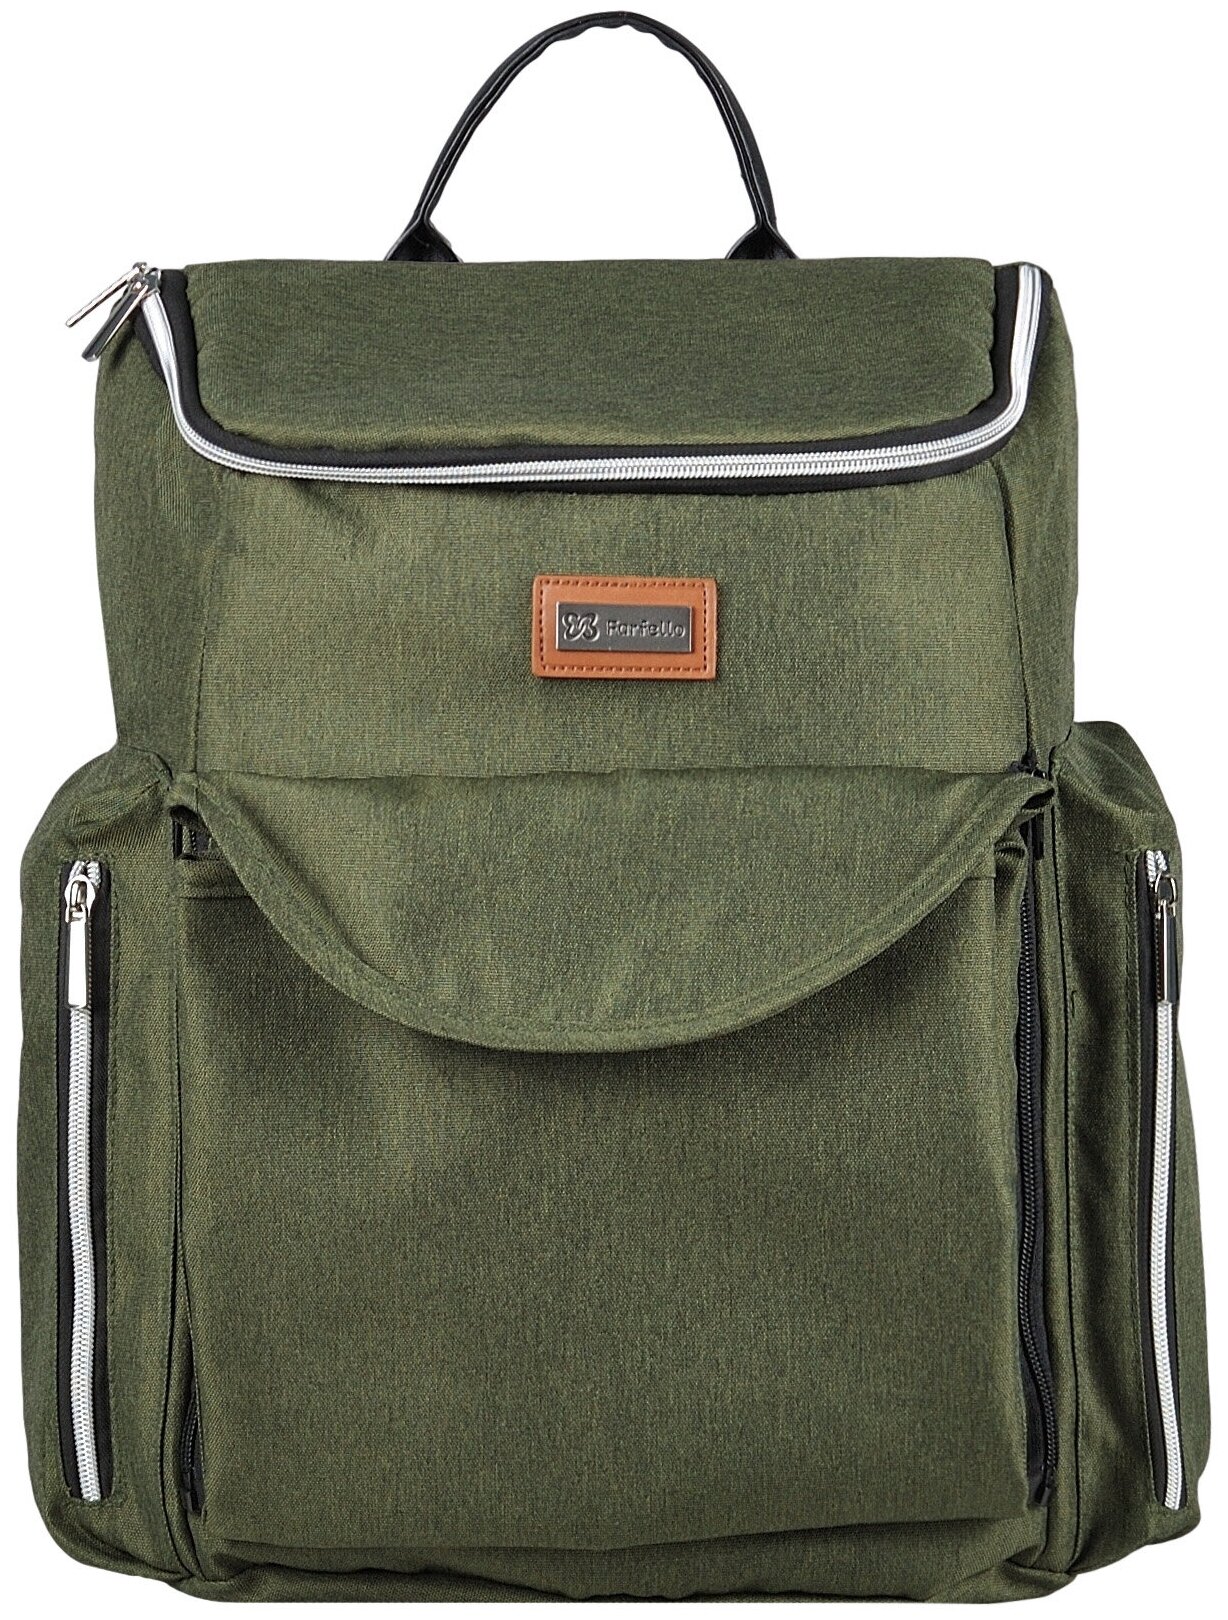 Рюкзак текстильный Farfello F8 / сумка / женский / мужской / школьный / для мам / цвет хаки